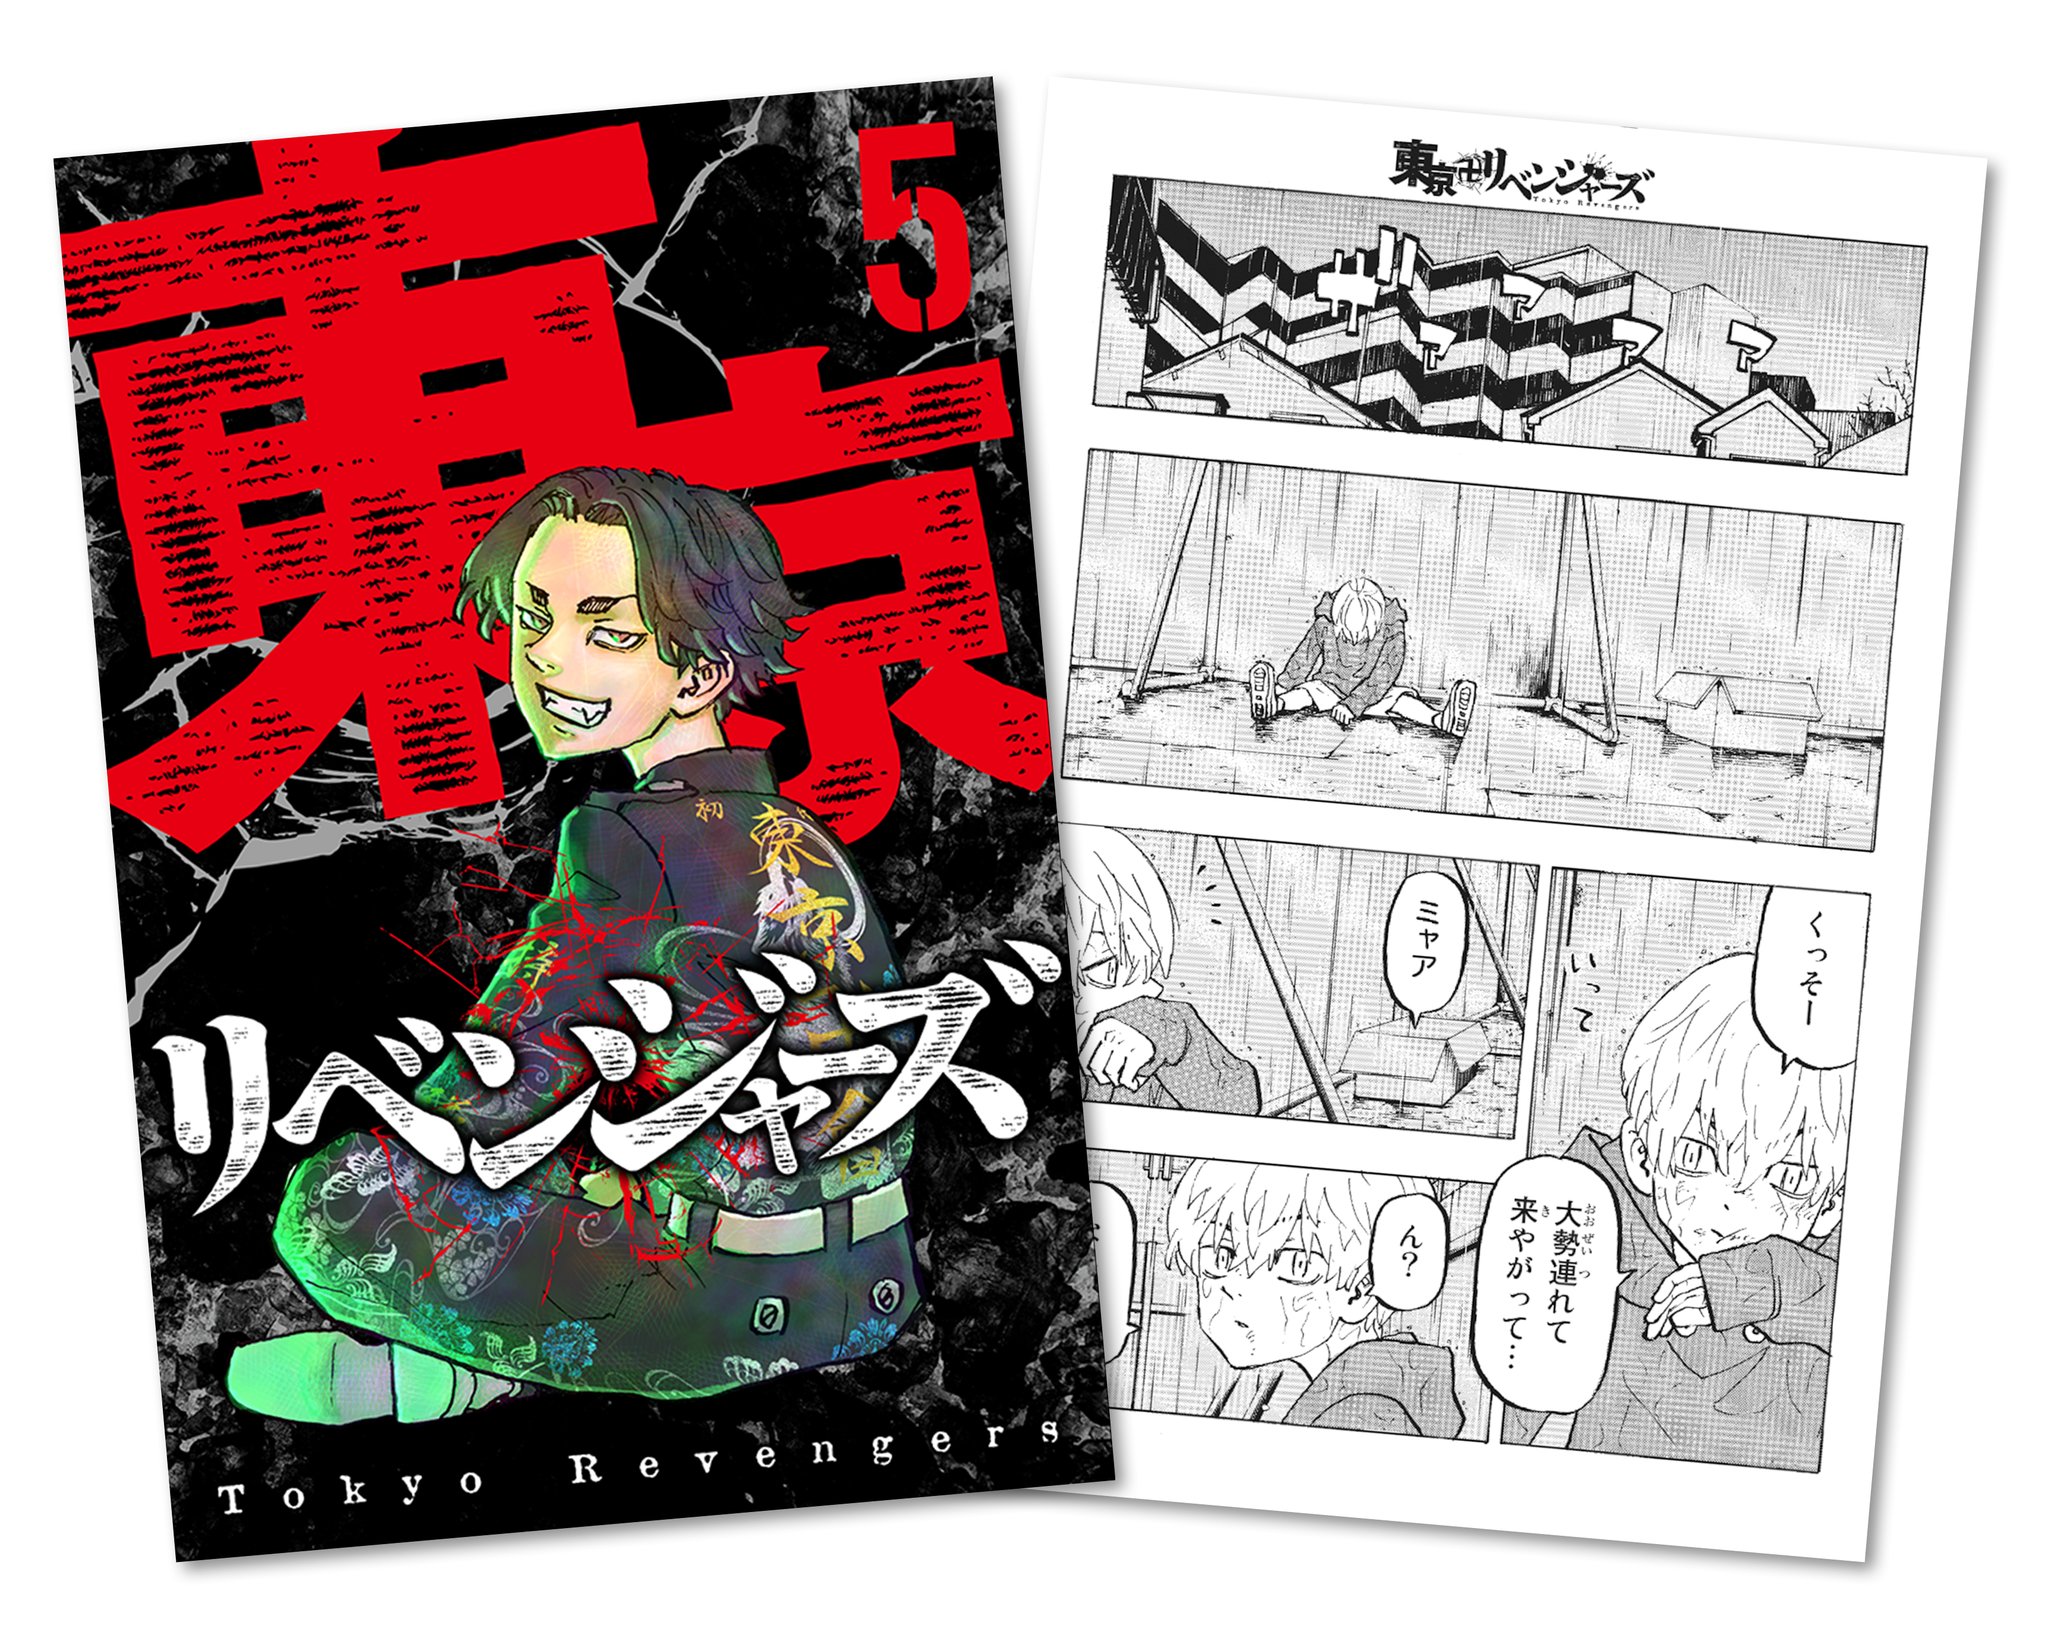 Tokyo Revengers revela capa do Blu-ray da 2ª temporada